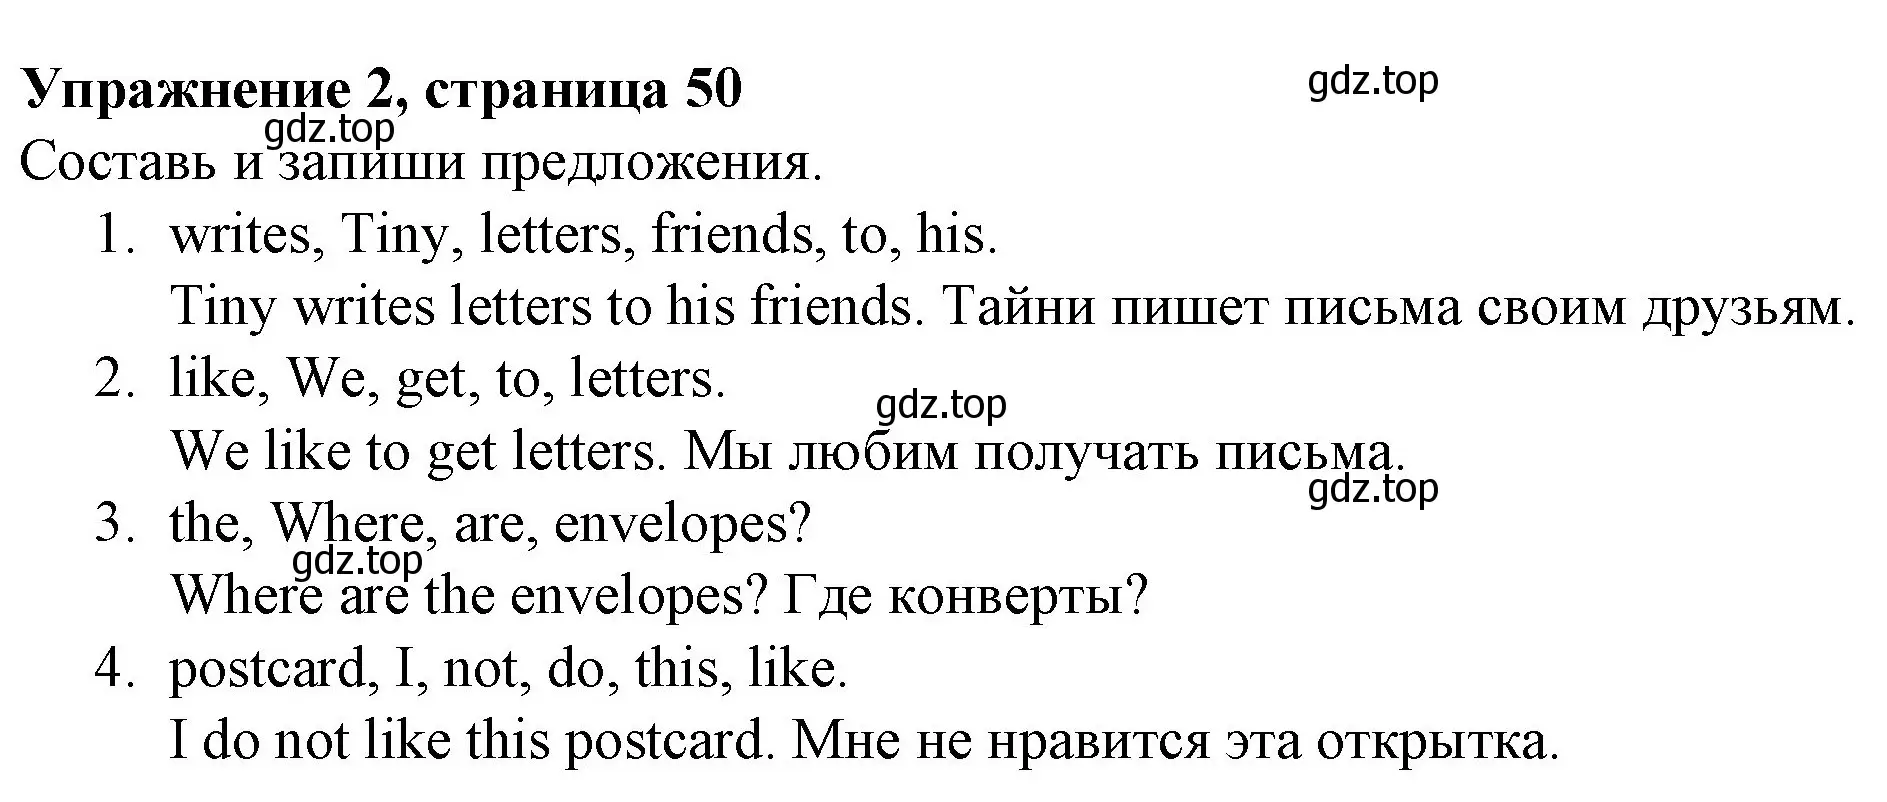 Решение номер 2 (страница 50) гдз по английскому языку 3 класс Биболетова, Денисенко, рабочая тетрадь